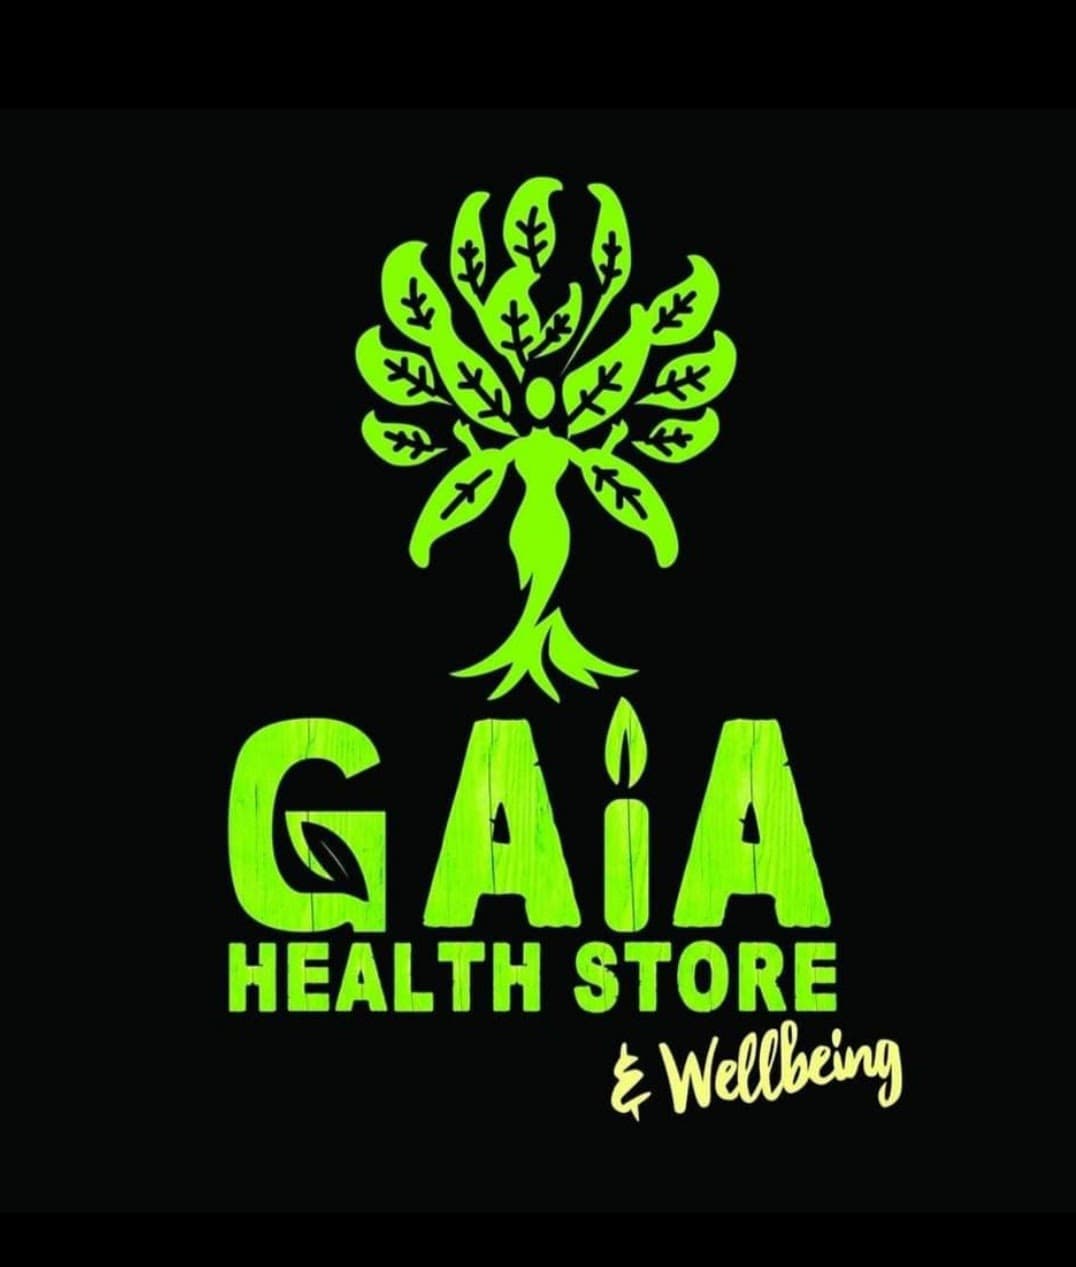 Gaia Health Store & Wellbeing